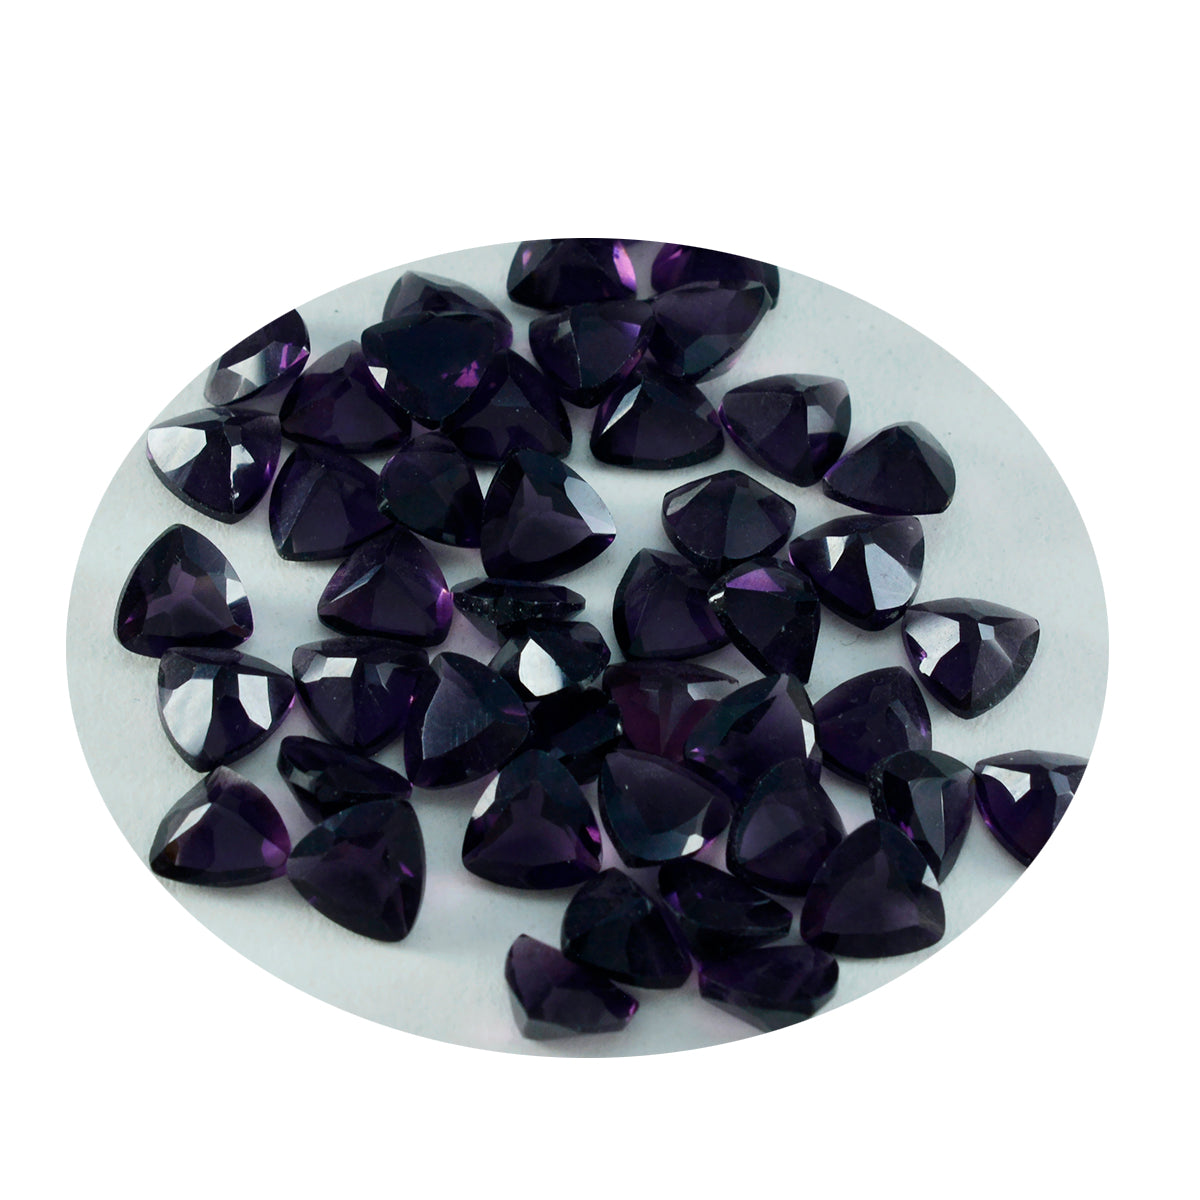 riyogems 1 шт., фиолетовый аметист, граненый 6x6 мм, форма триллиона, хорошее качество, свободные драгоценные камни